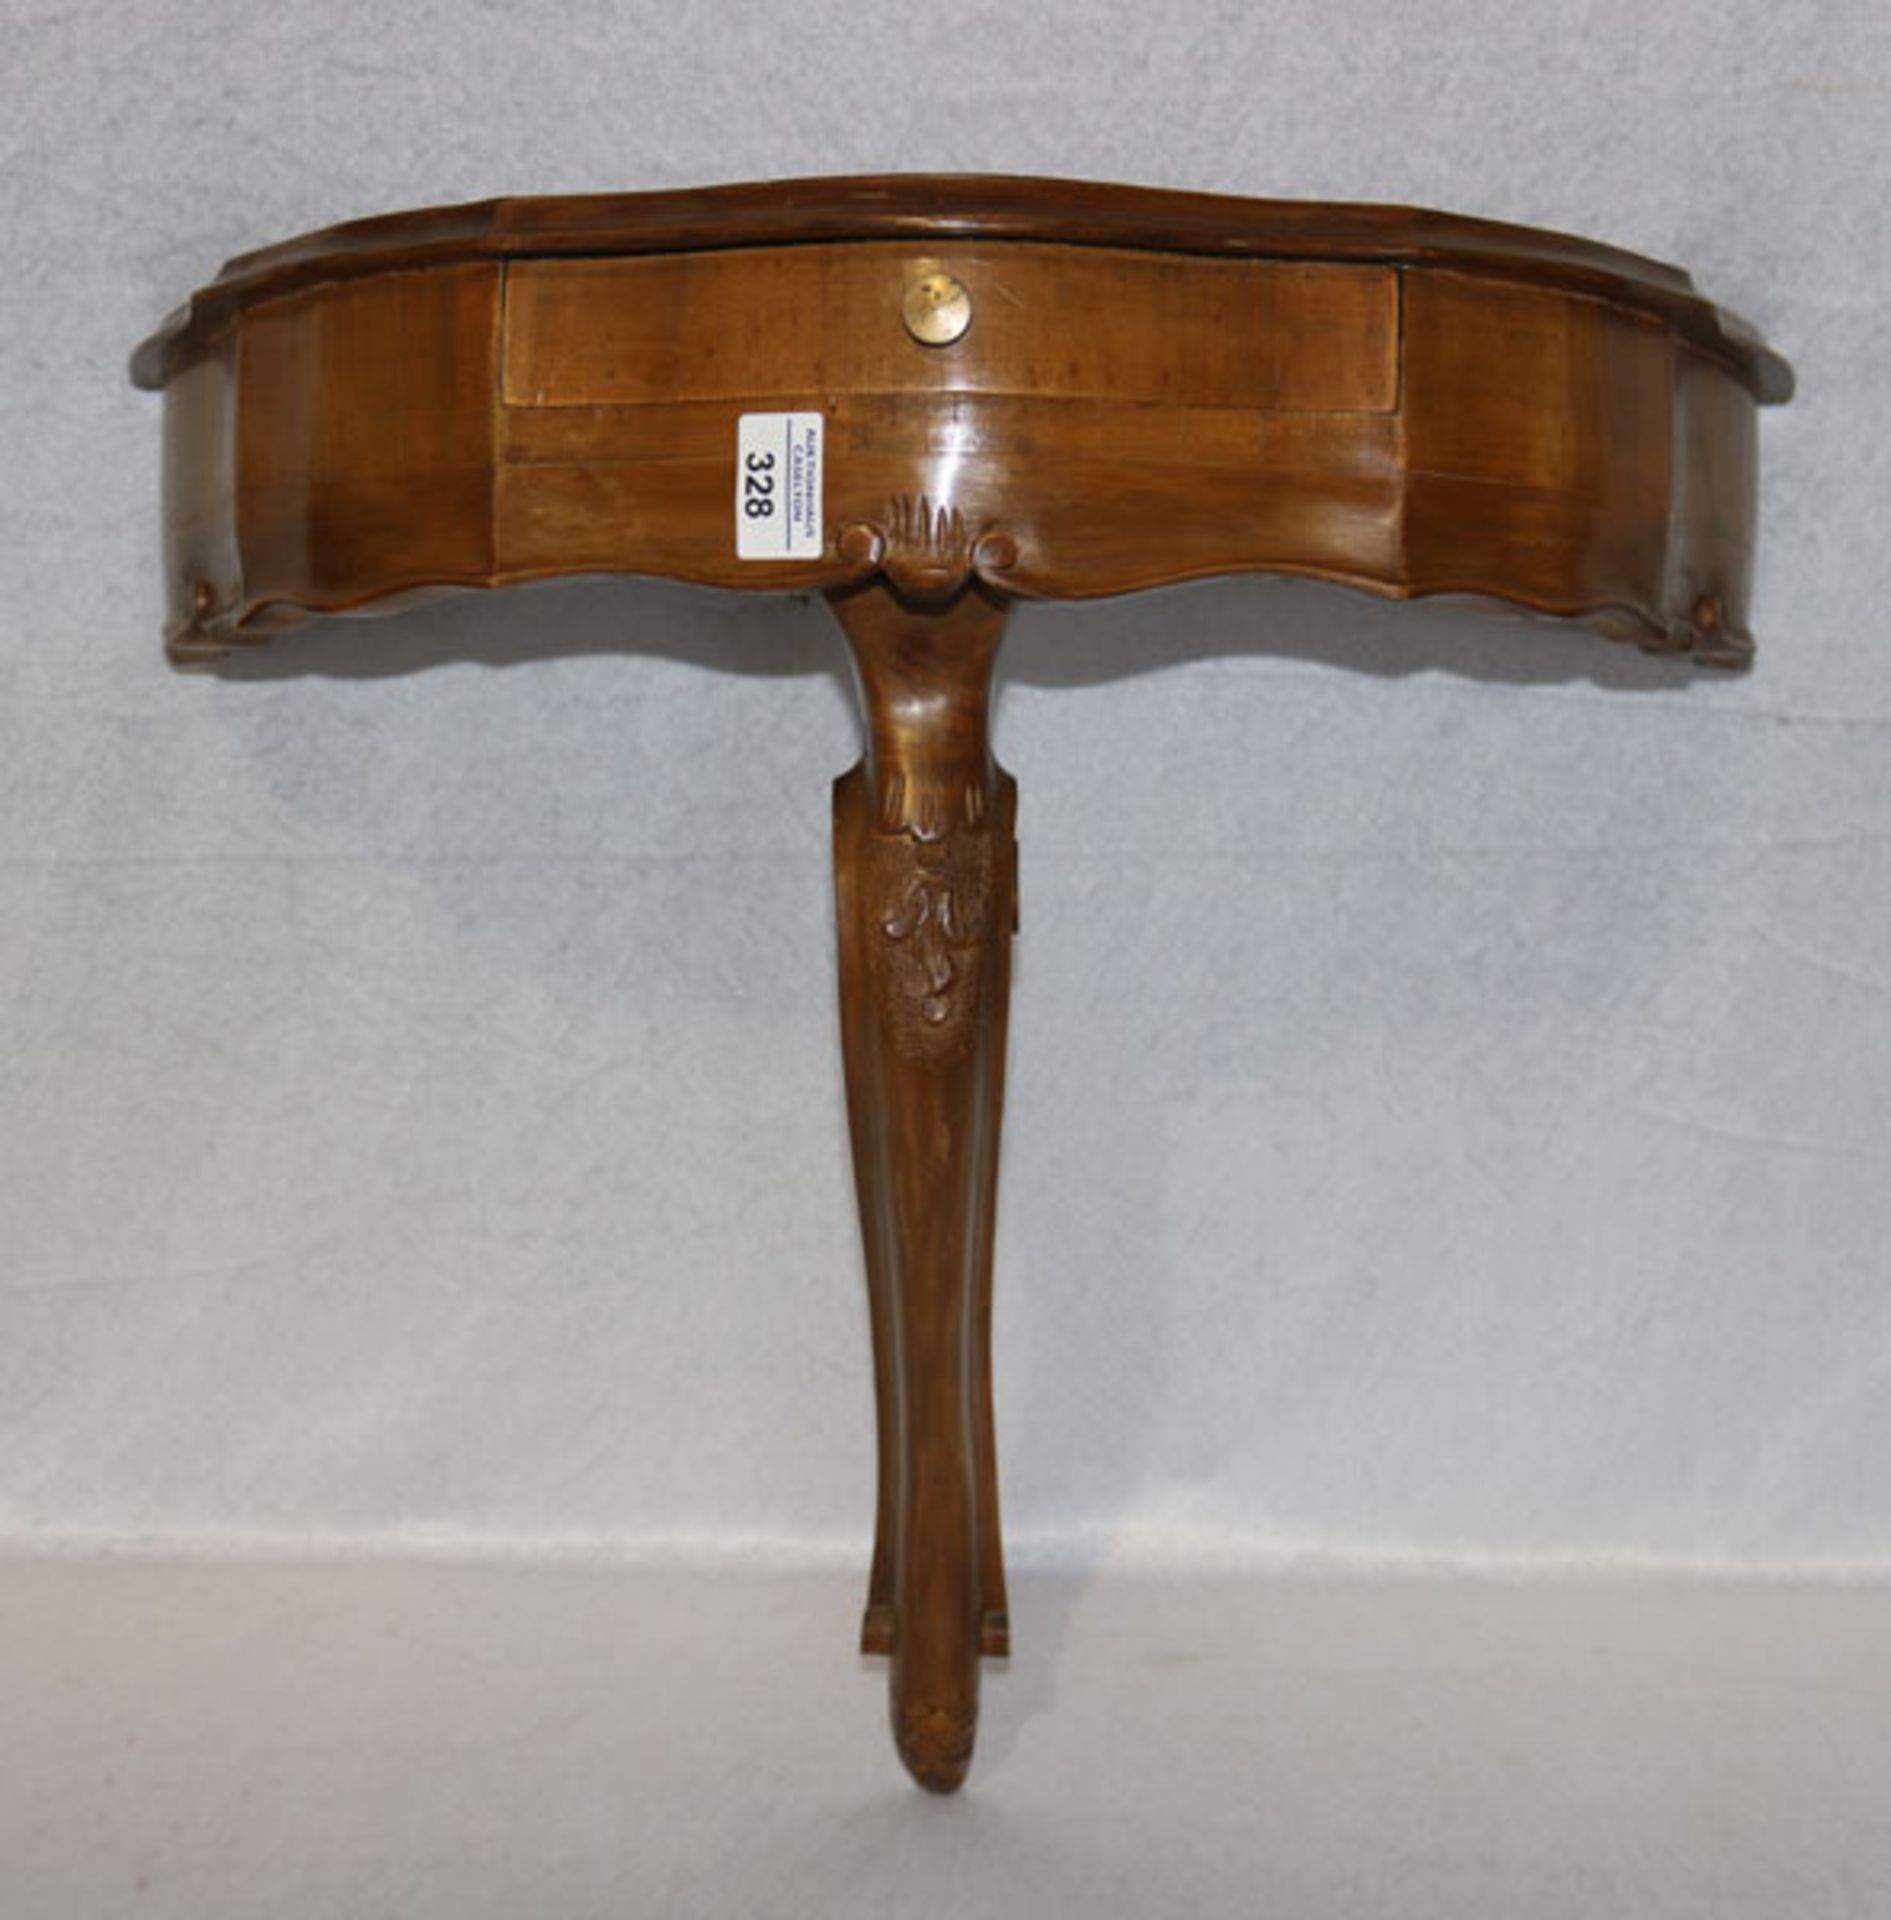 Holz Wandkonsole in halbrunder Form, Korpus mit einer Schublade, H 56 cm, B 55 cm, T 30 cm,